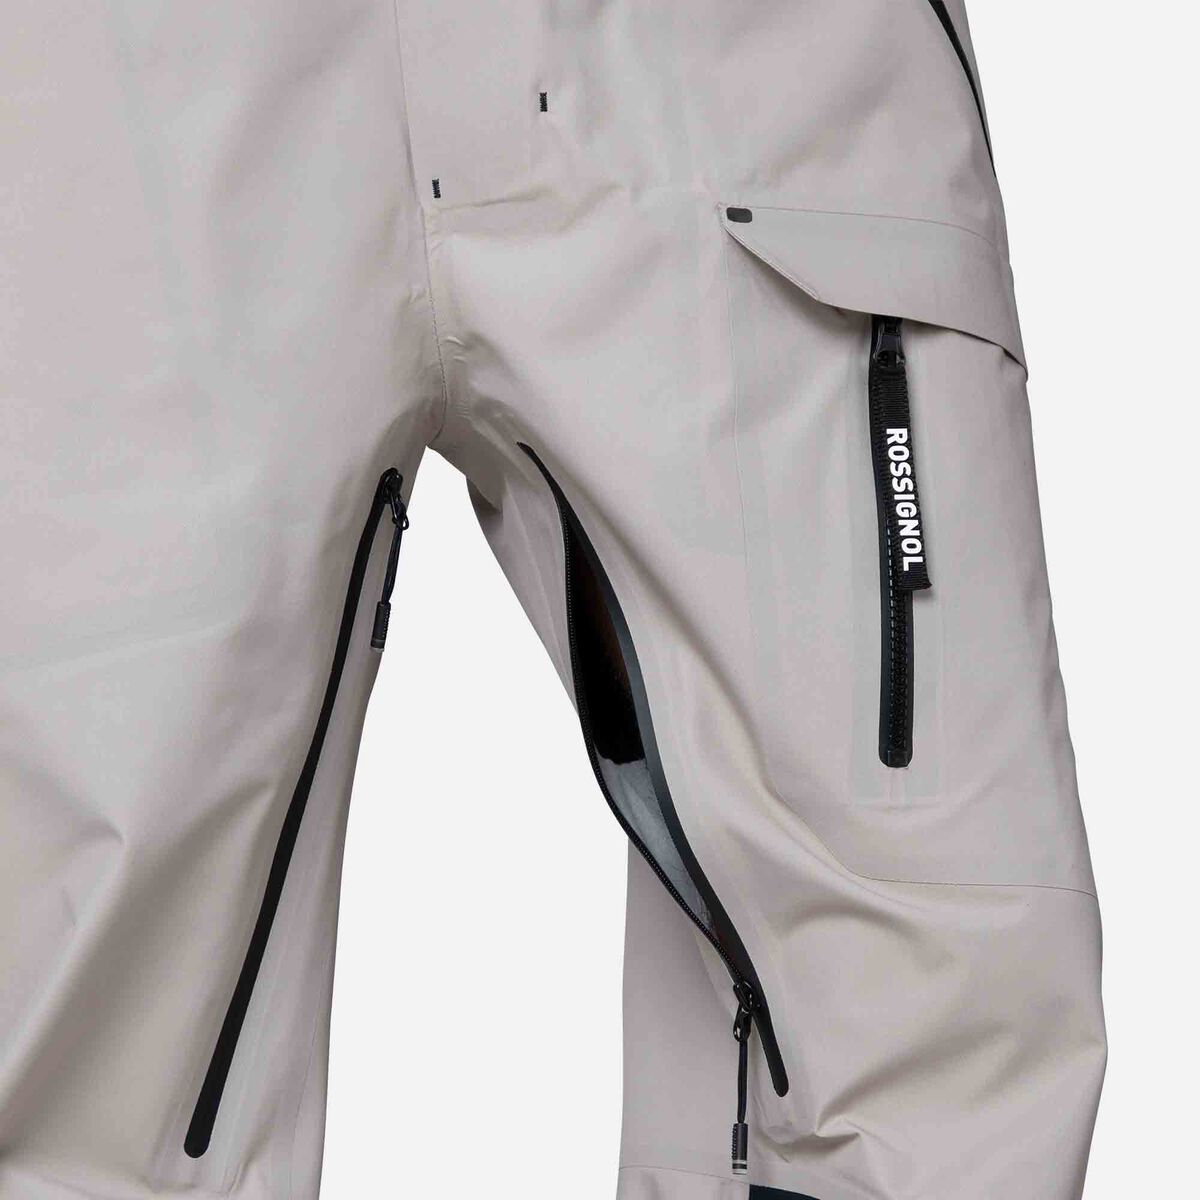 Rossignol Men's Atelier S Bib Pants grey